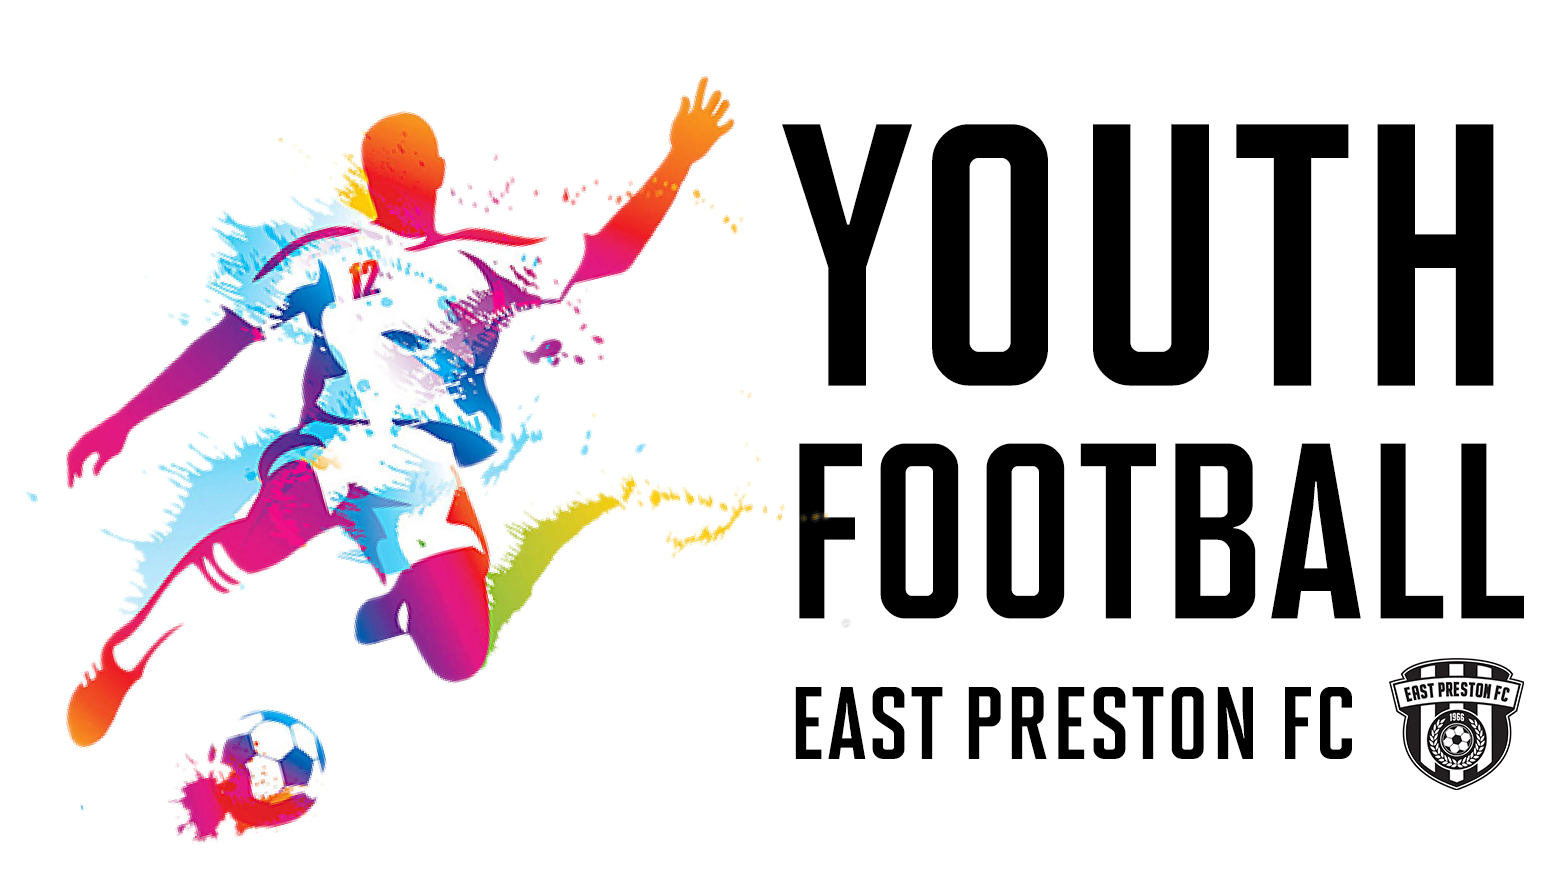 East Preston FC Youth Football